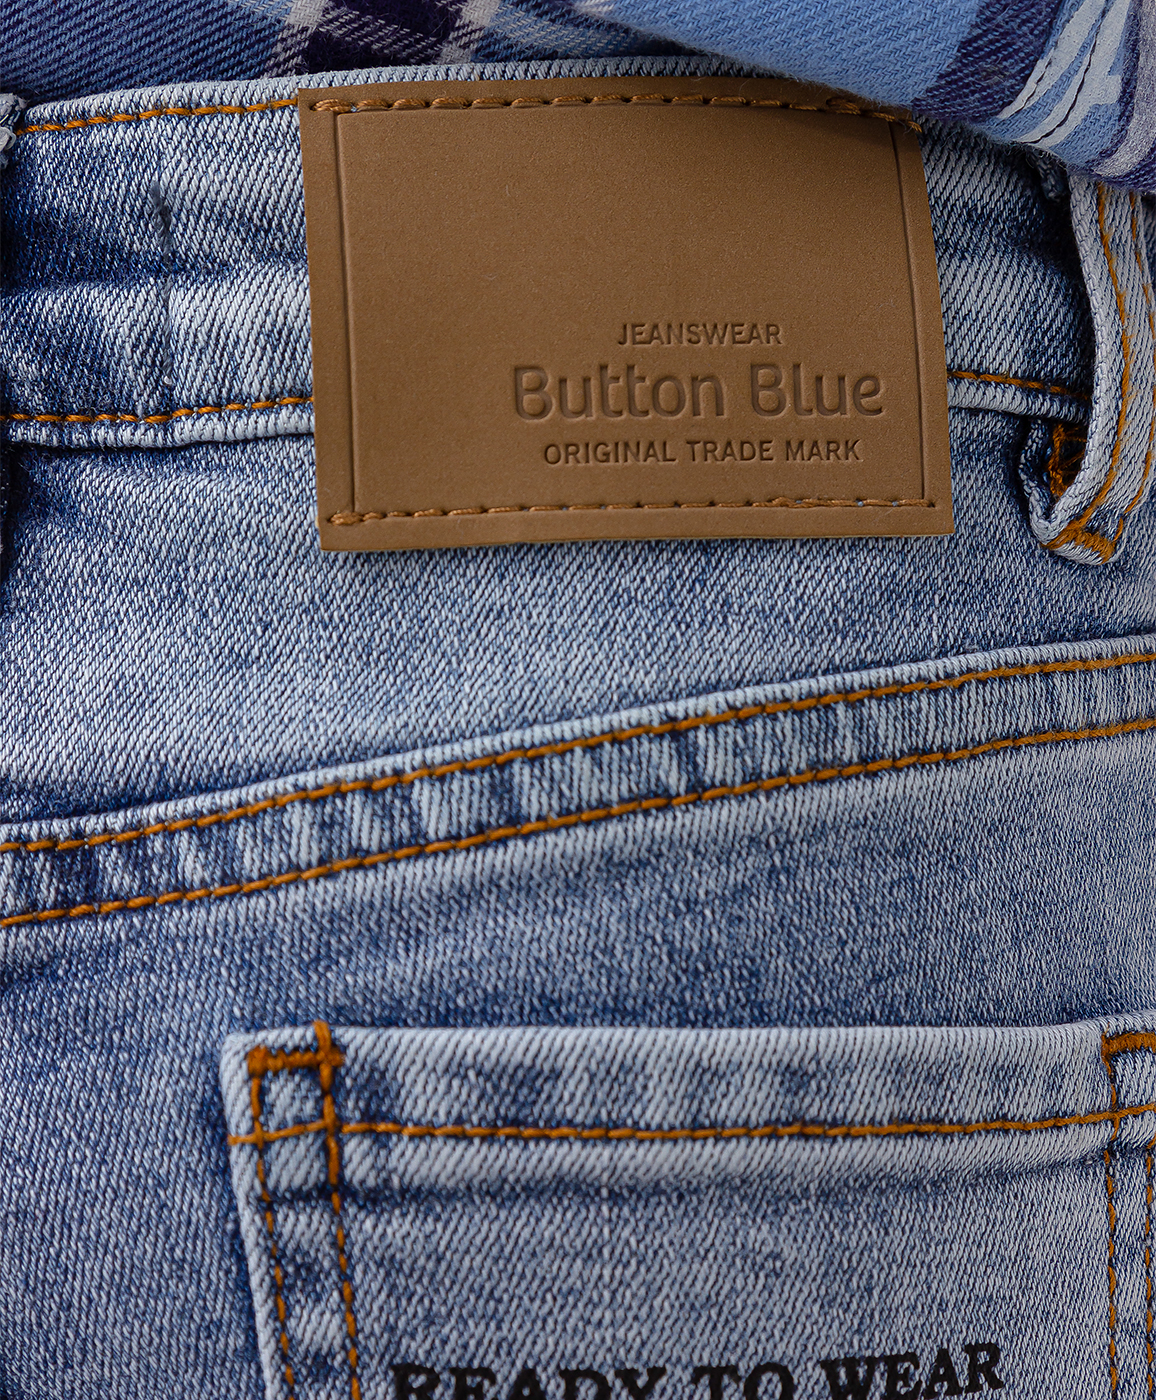 Джинсы классические голубые Button Blue 123BBBMC63041800, размер 98, цвет голубой - фото 4